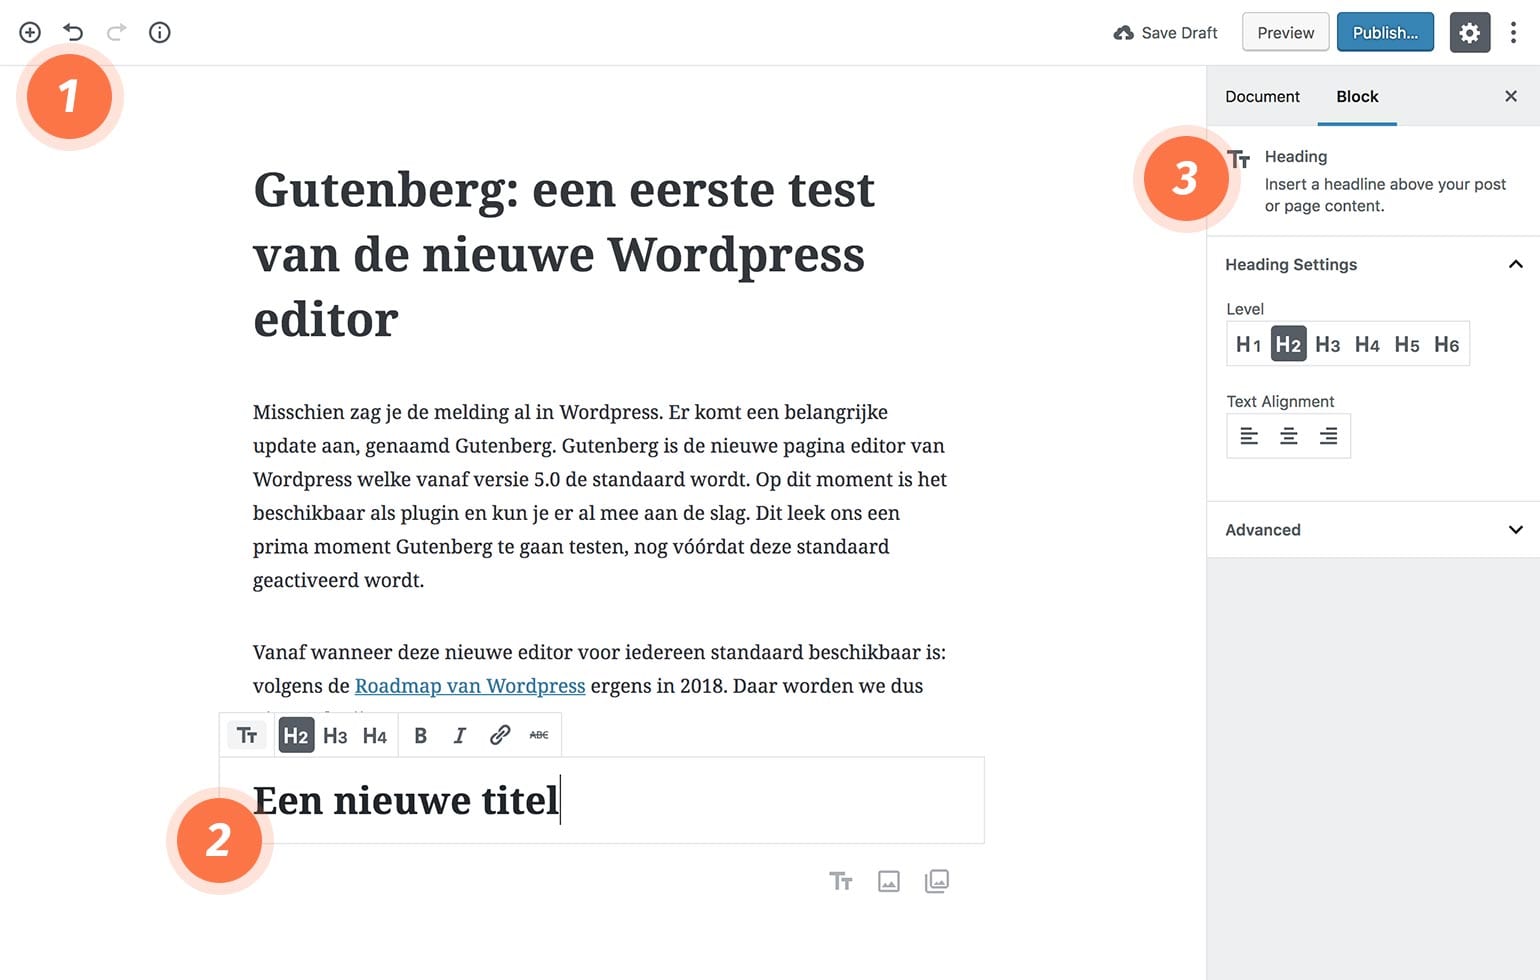 Gutenberg editor; een eerste review